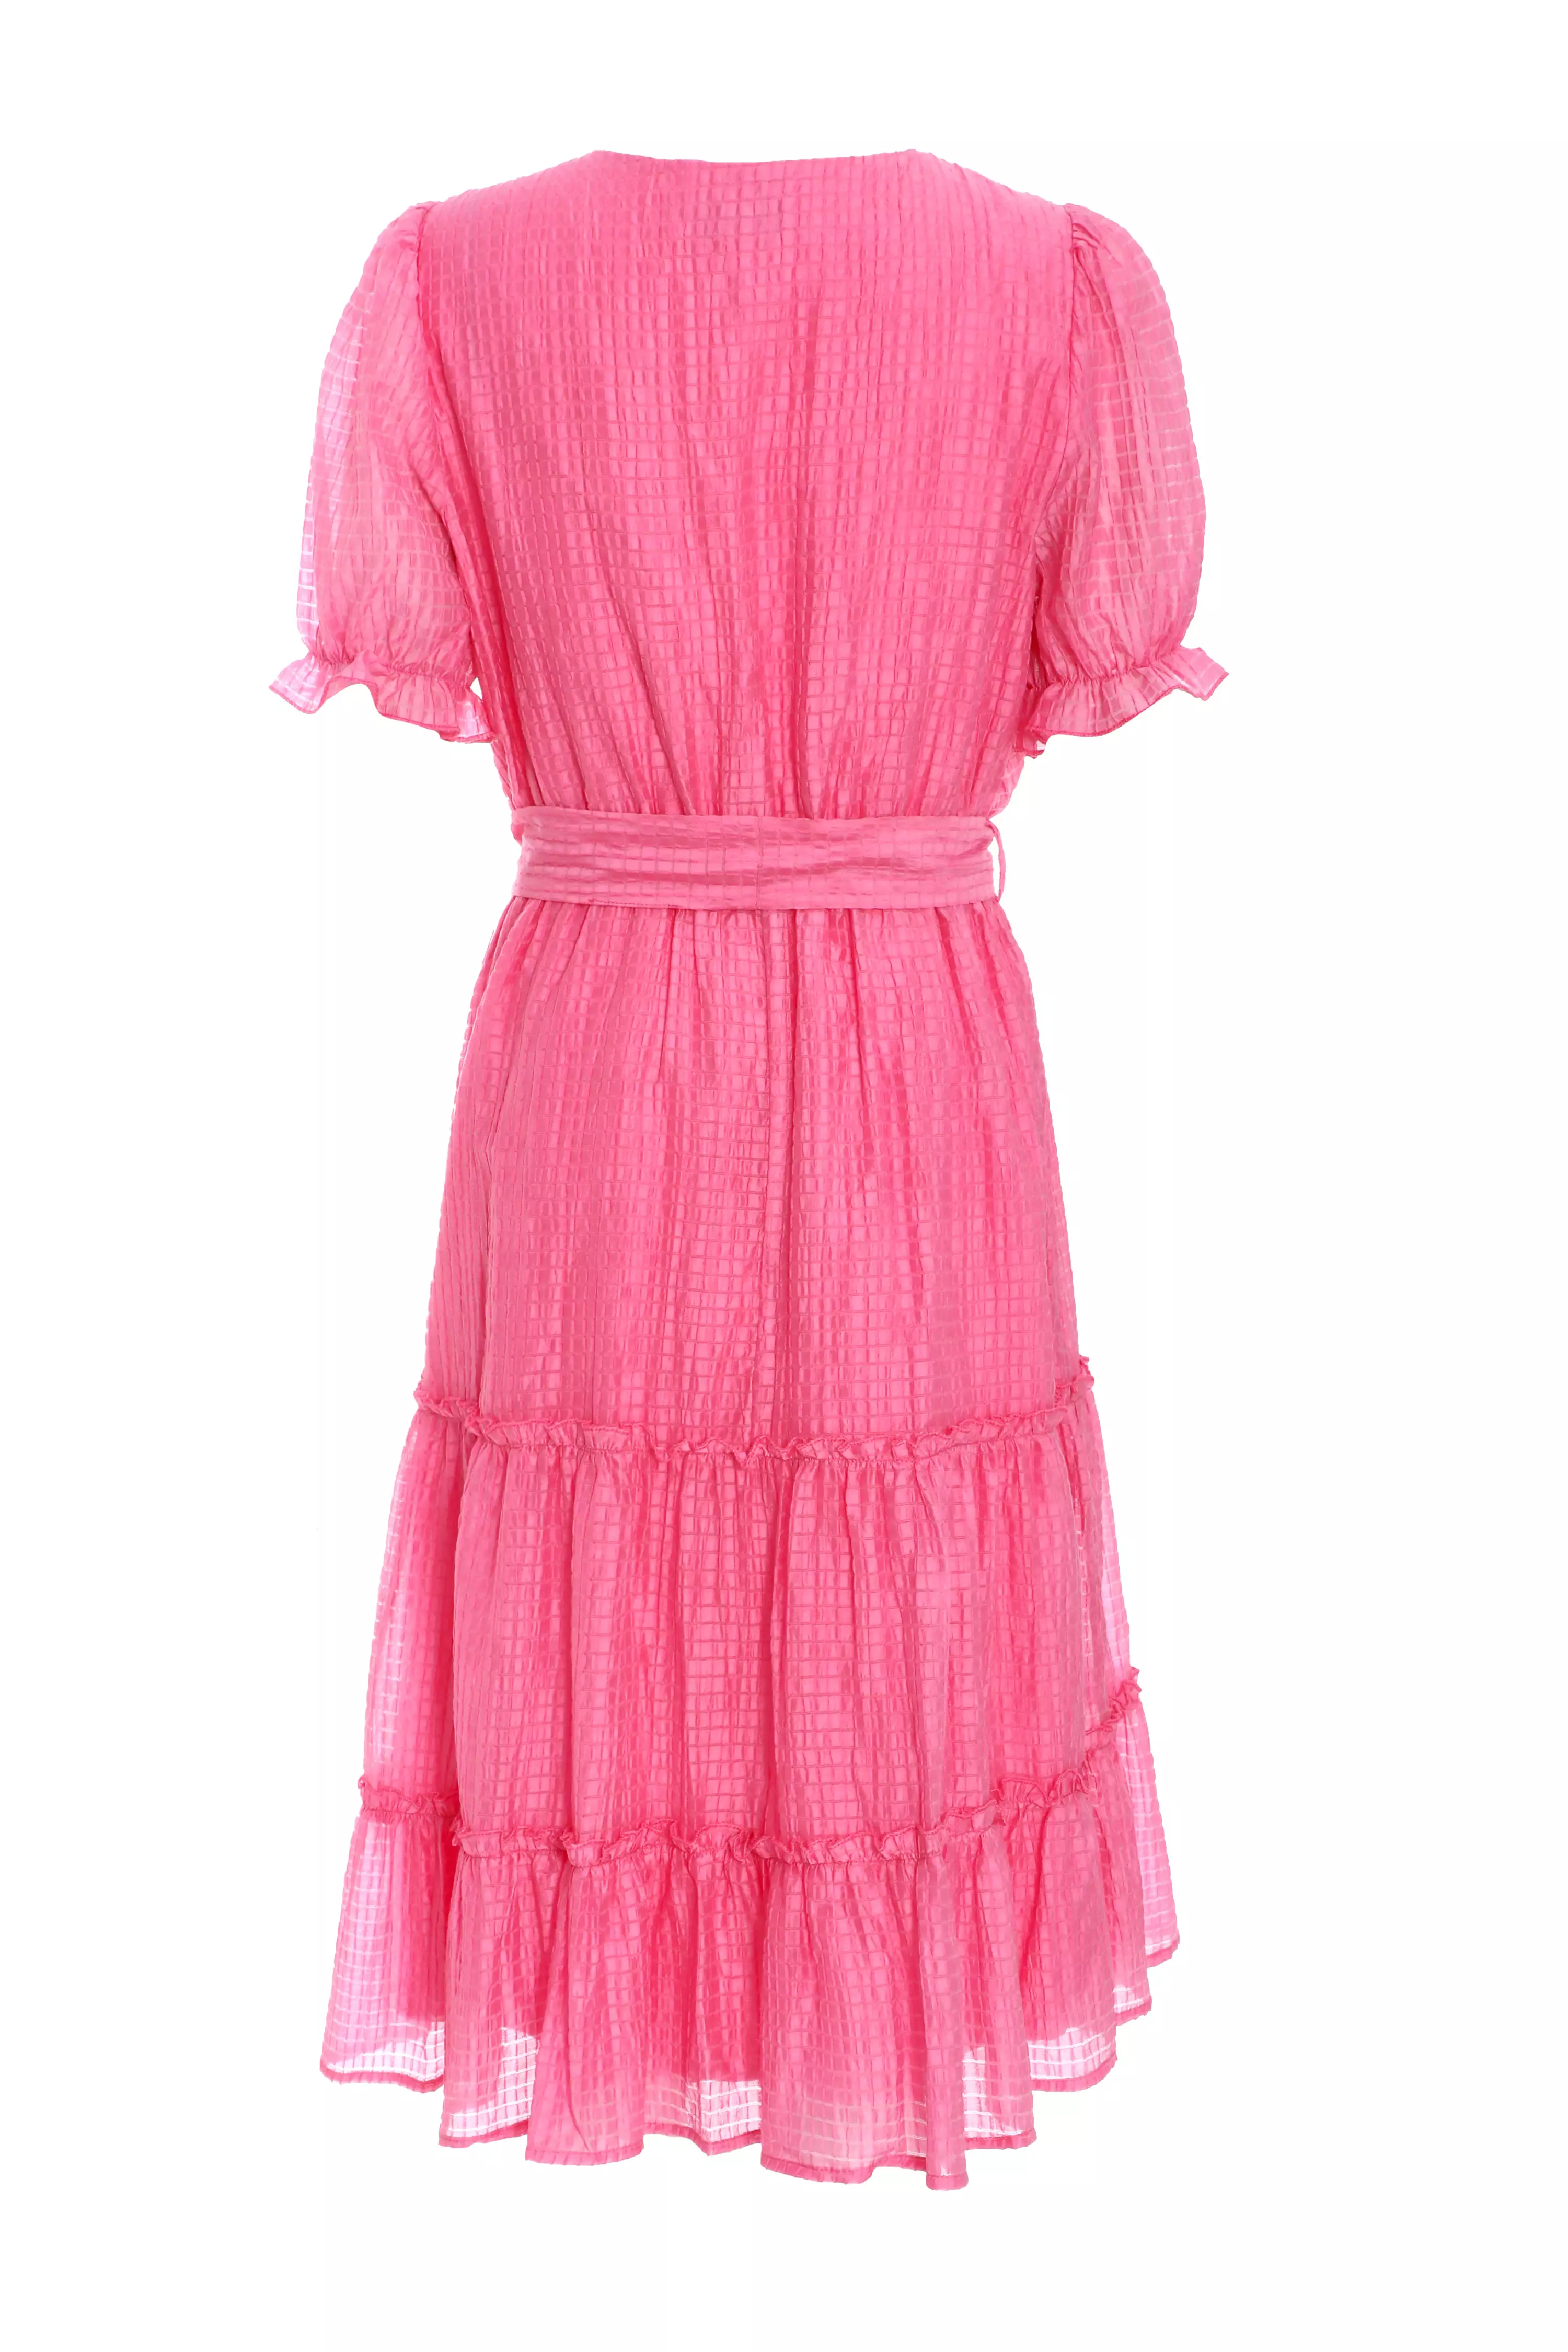 Pink Textured Frill Skater Mini Dress